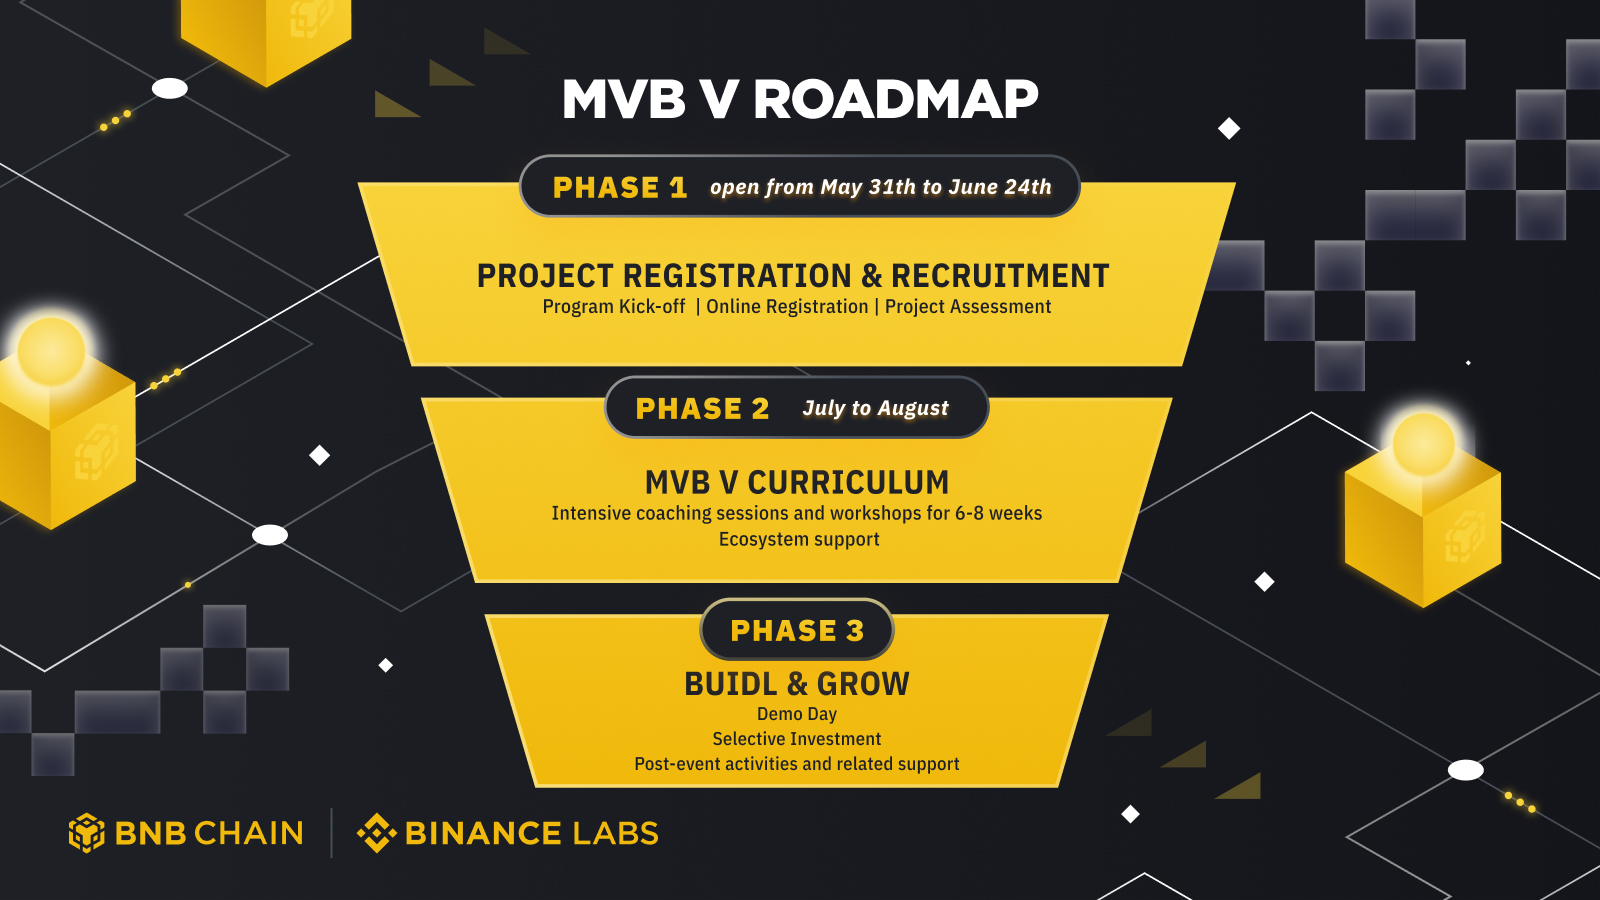 MVBV V roadmap